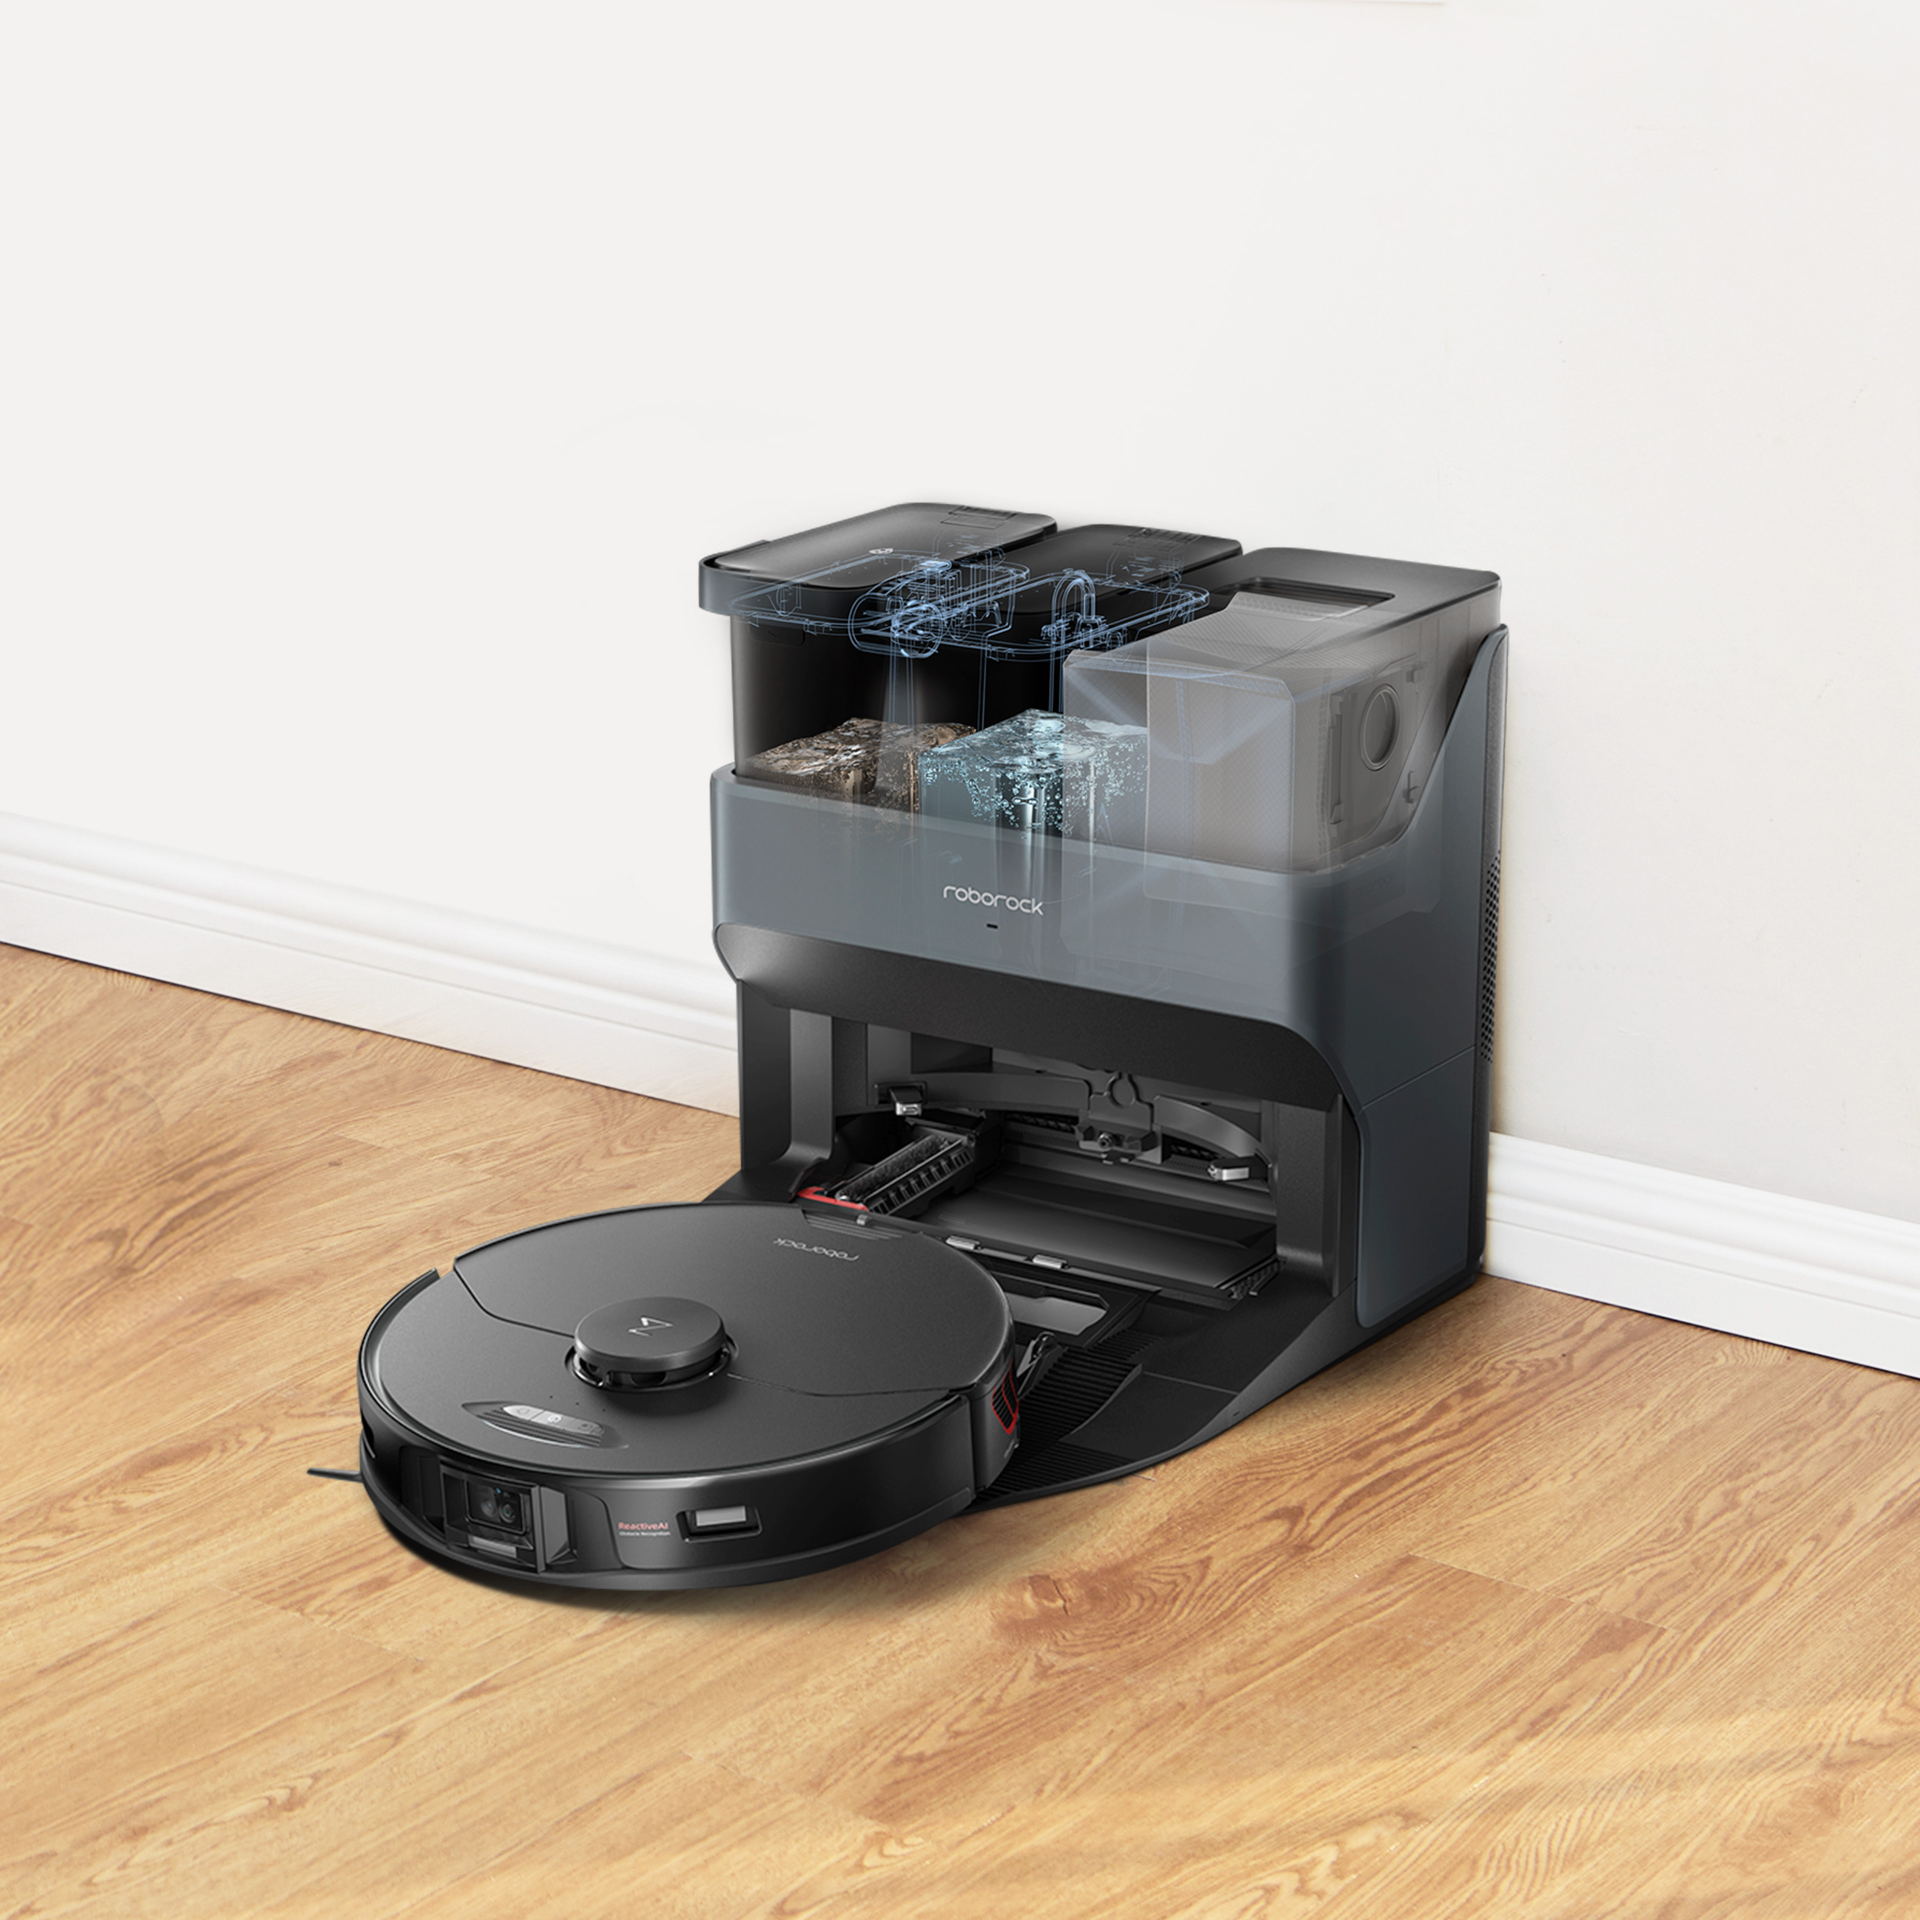 Rent Roborock S7 Vacuum & Mop Robot Cleaner from €29.90 per month